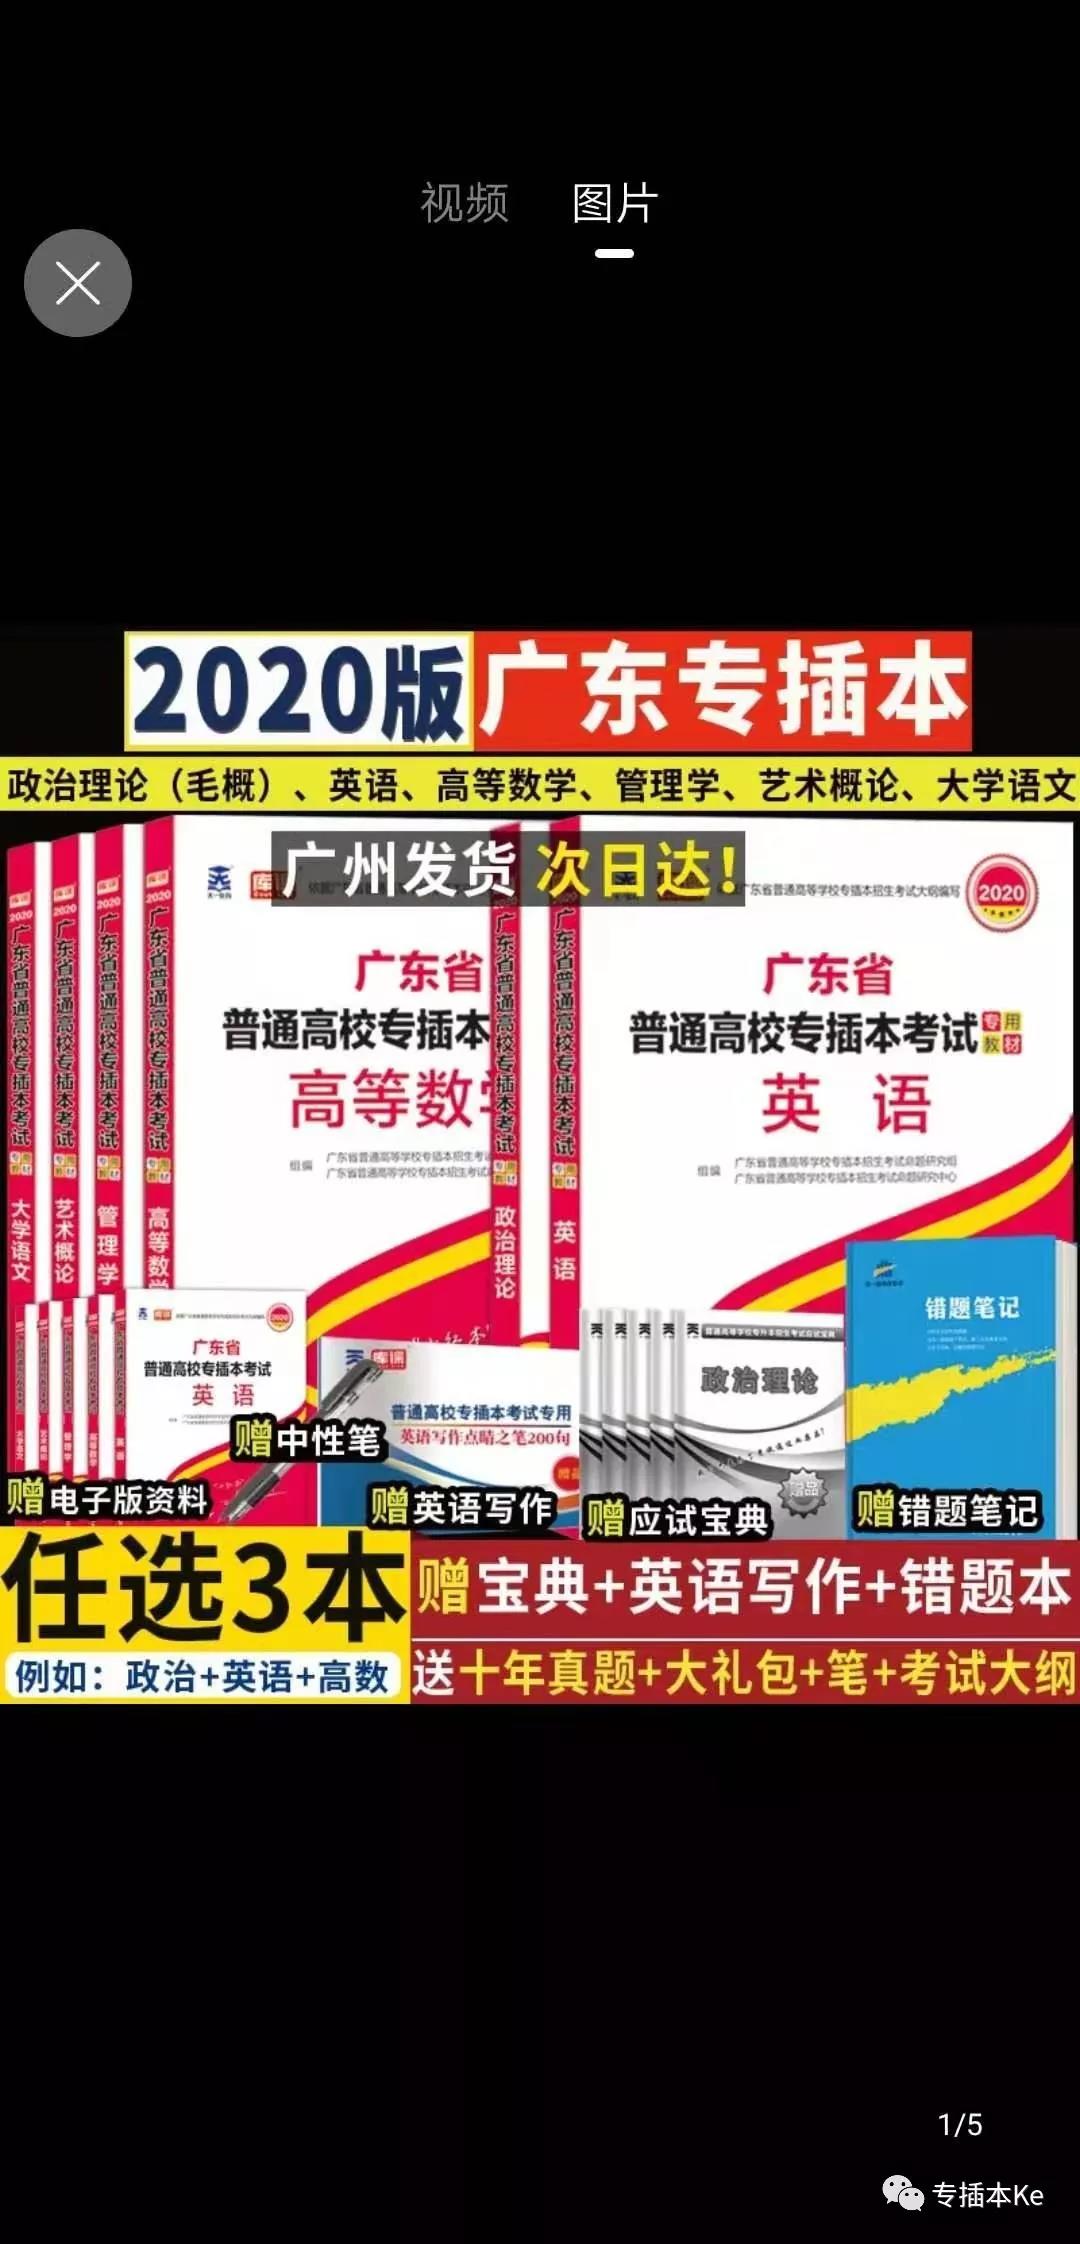 2021广东专插本公共课考试课本，带上课本图，不要又买错了！！！